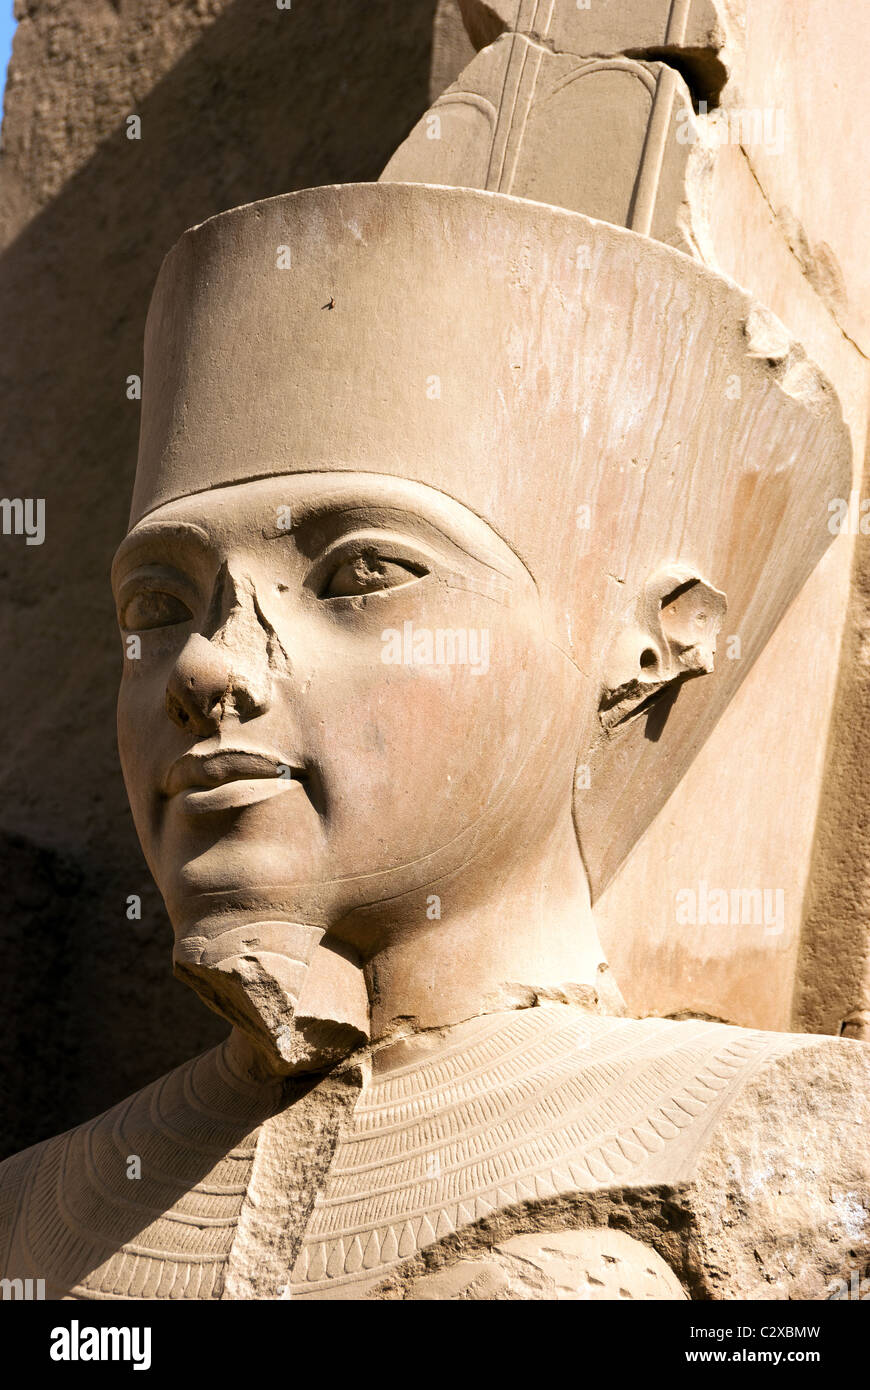 Statua di faraone Hatshepsut - Tempio di Karnak complesso - Luxor, l'Alto Egitto Foto Stock